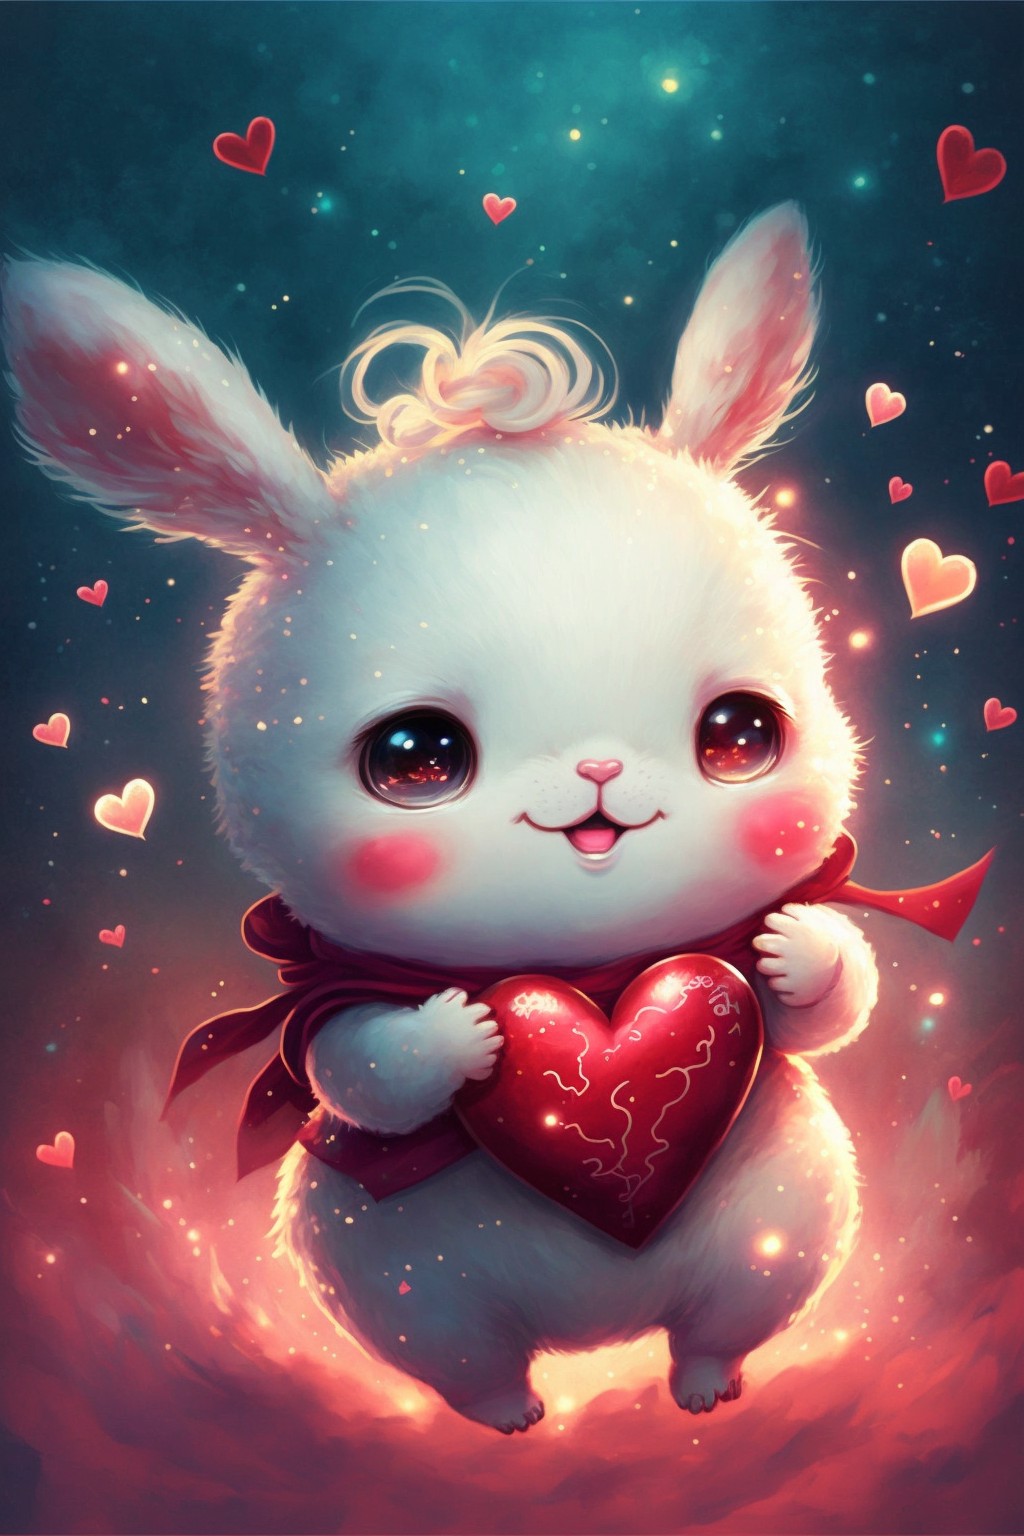 20 super cute love bunnies